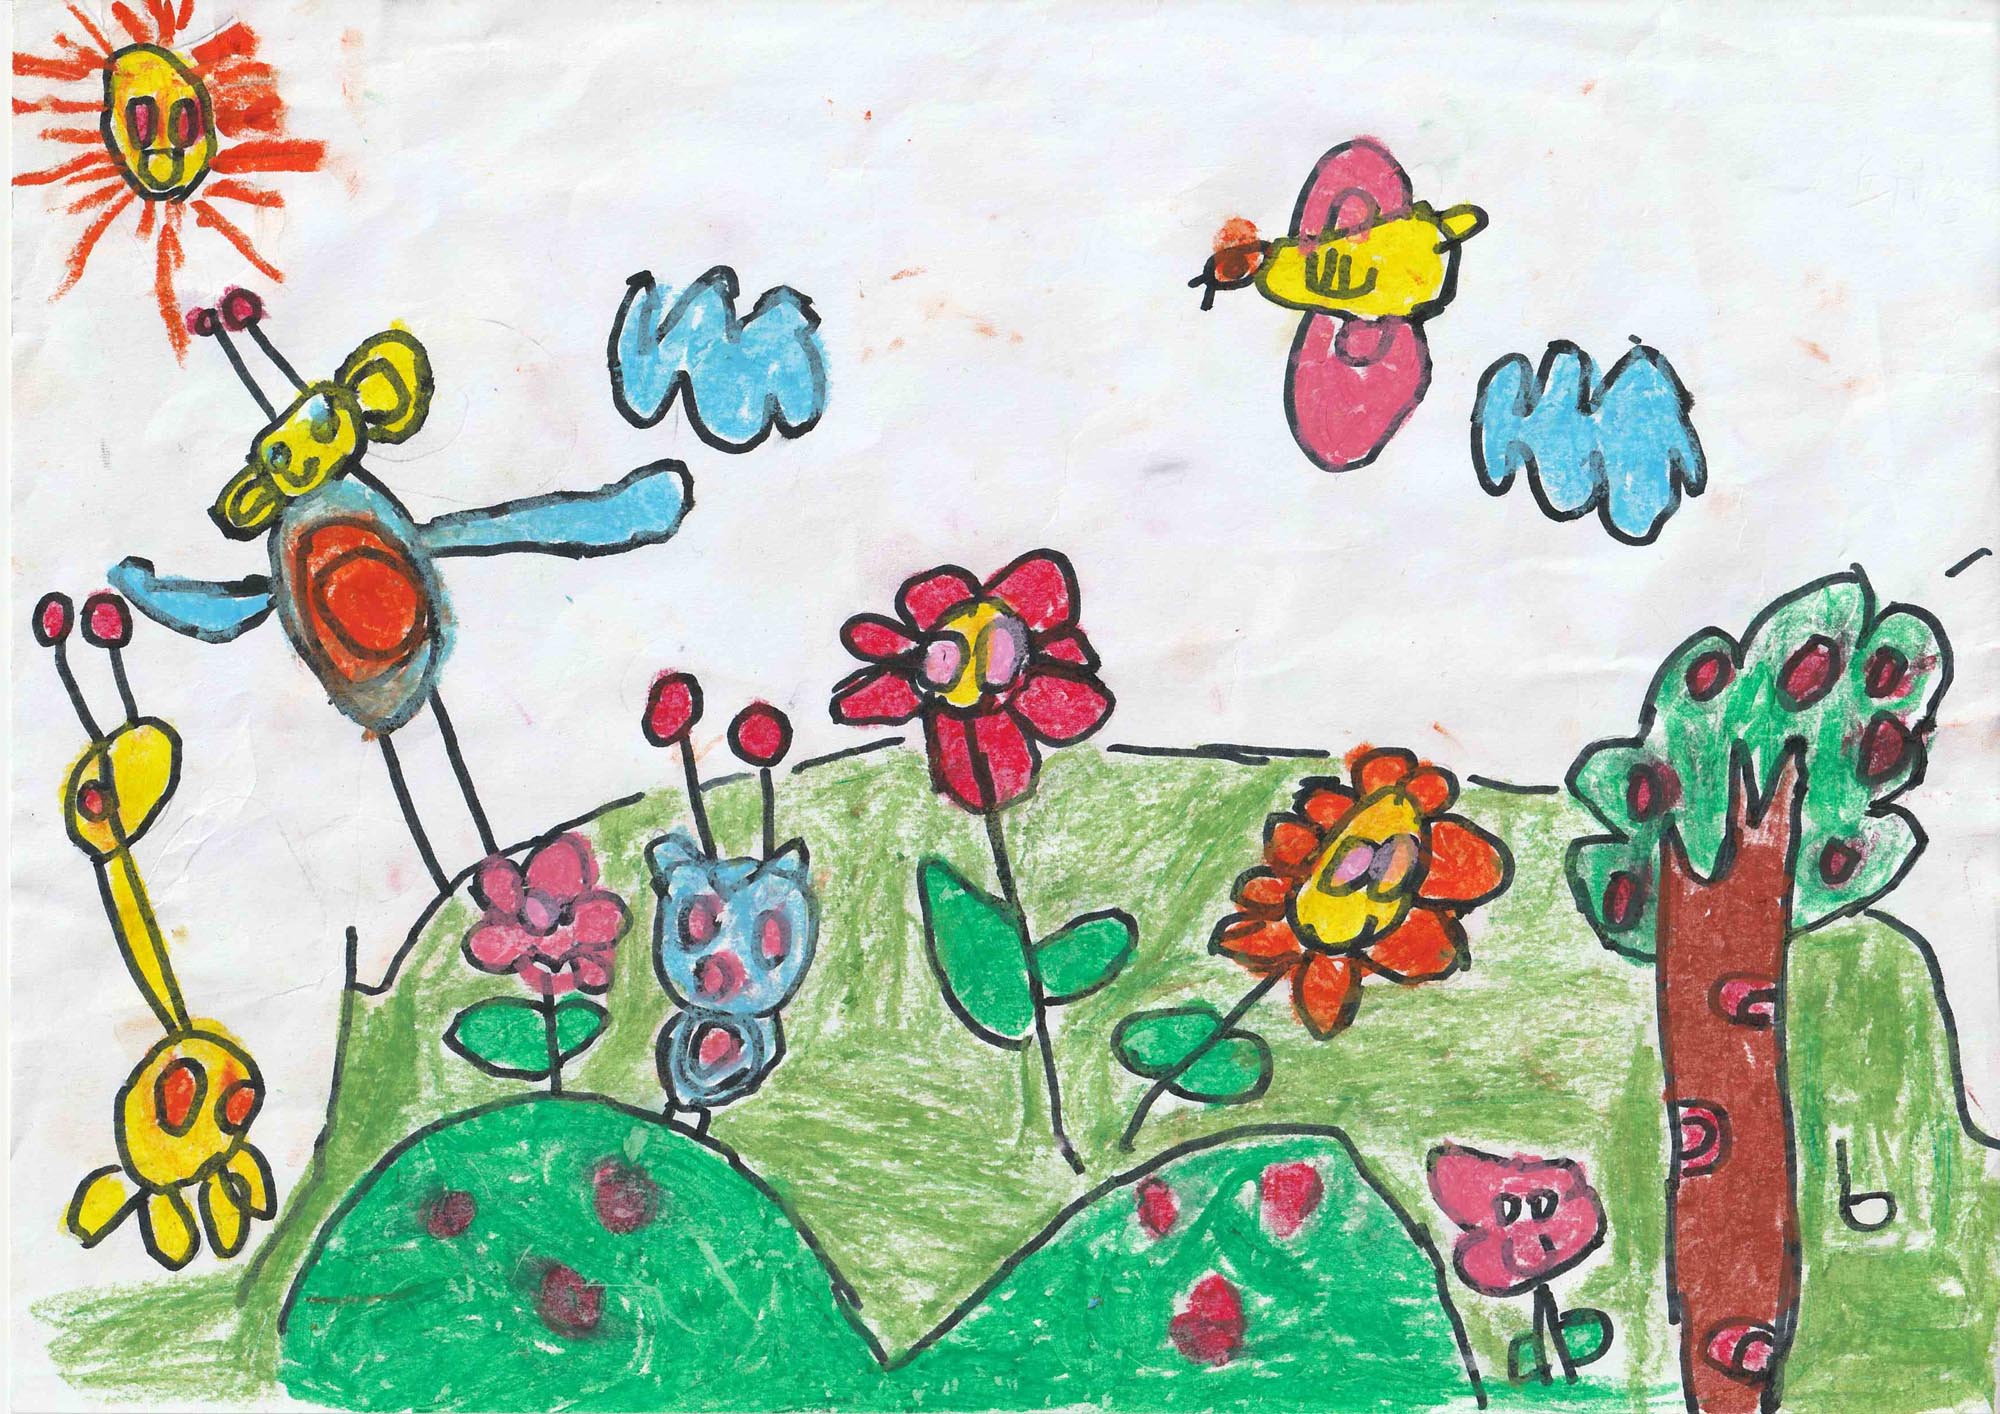 快乐儿童节，下一代龙净人的环保梦。获奖作品：《我心中的大自然》邱裕添 4岁